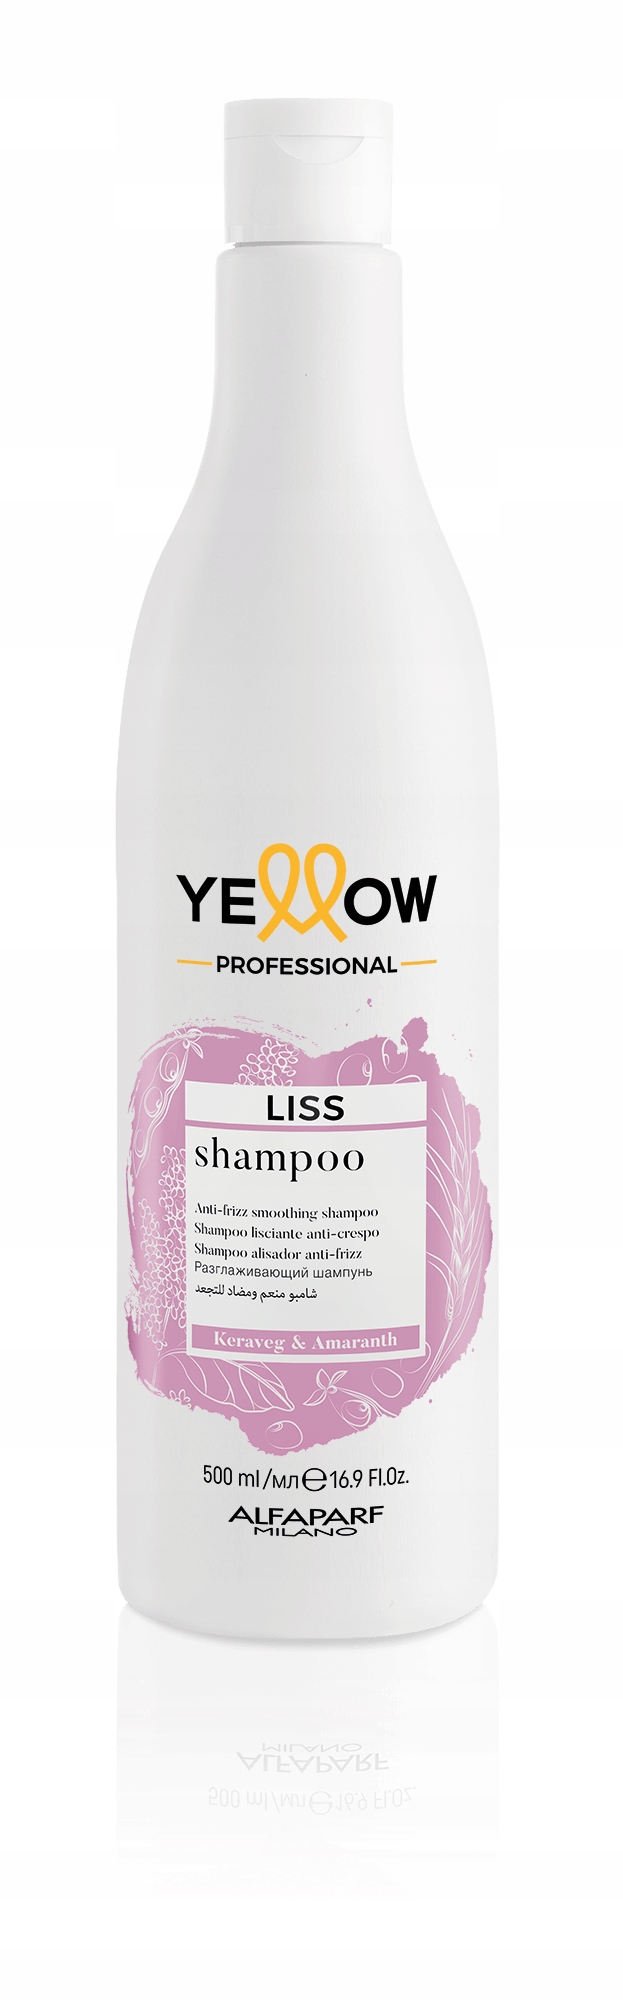 szampon i odżywka po keratynowym prostowaniu włosów allegro